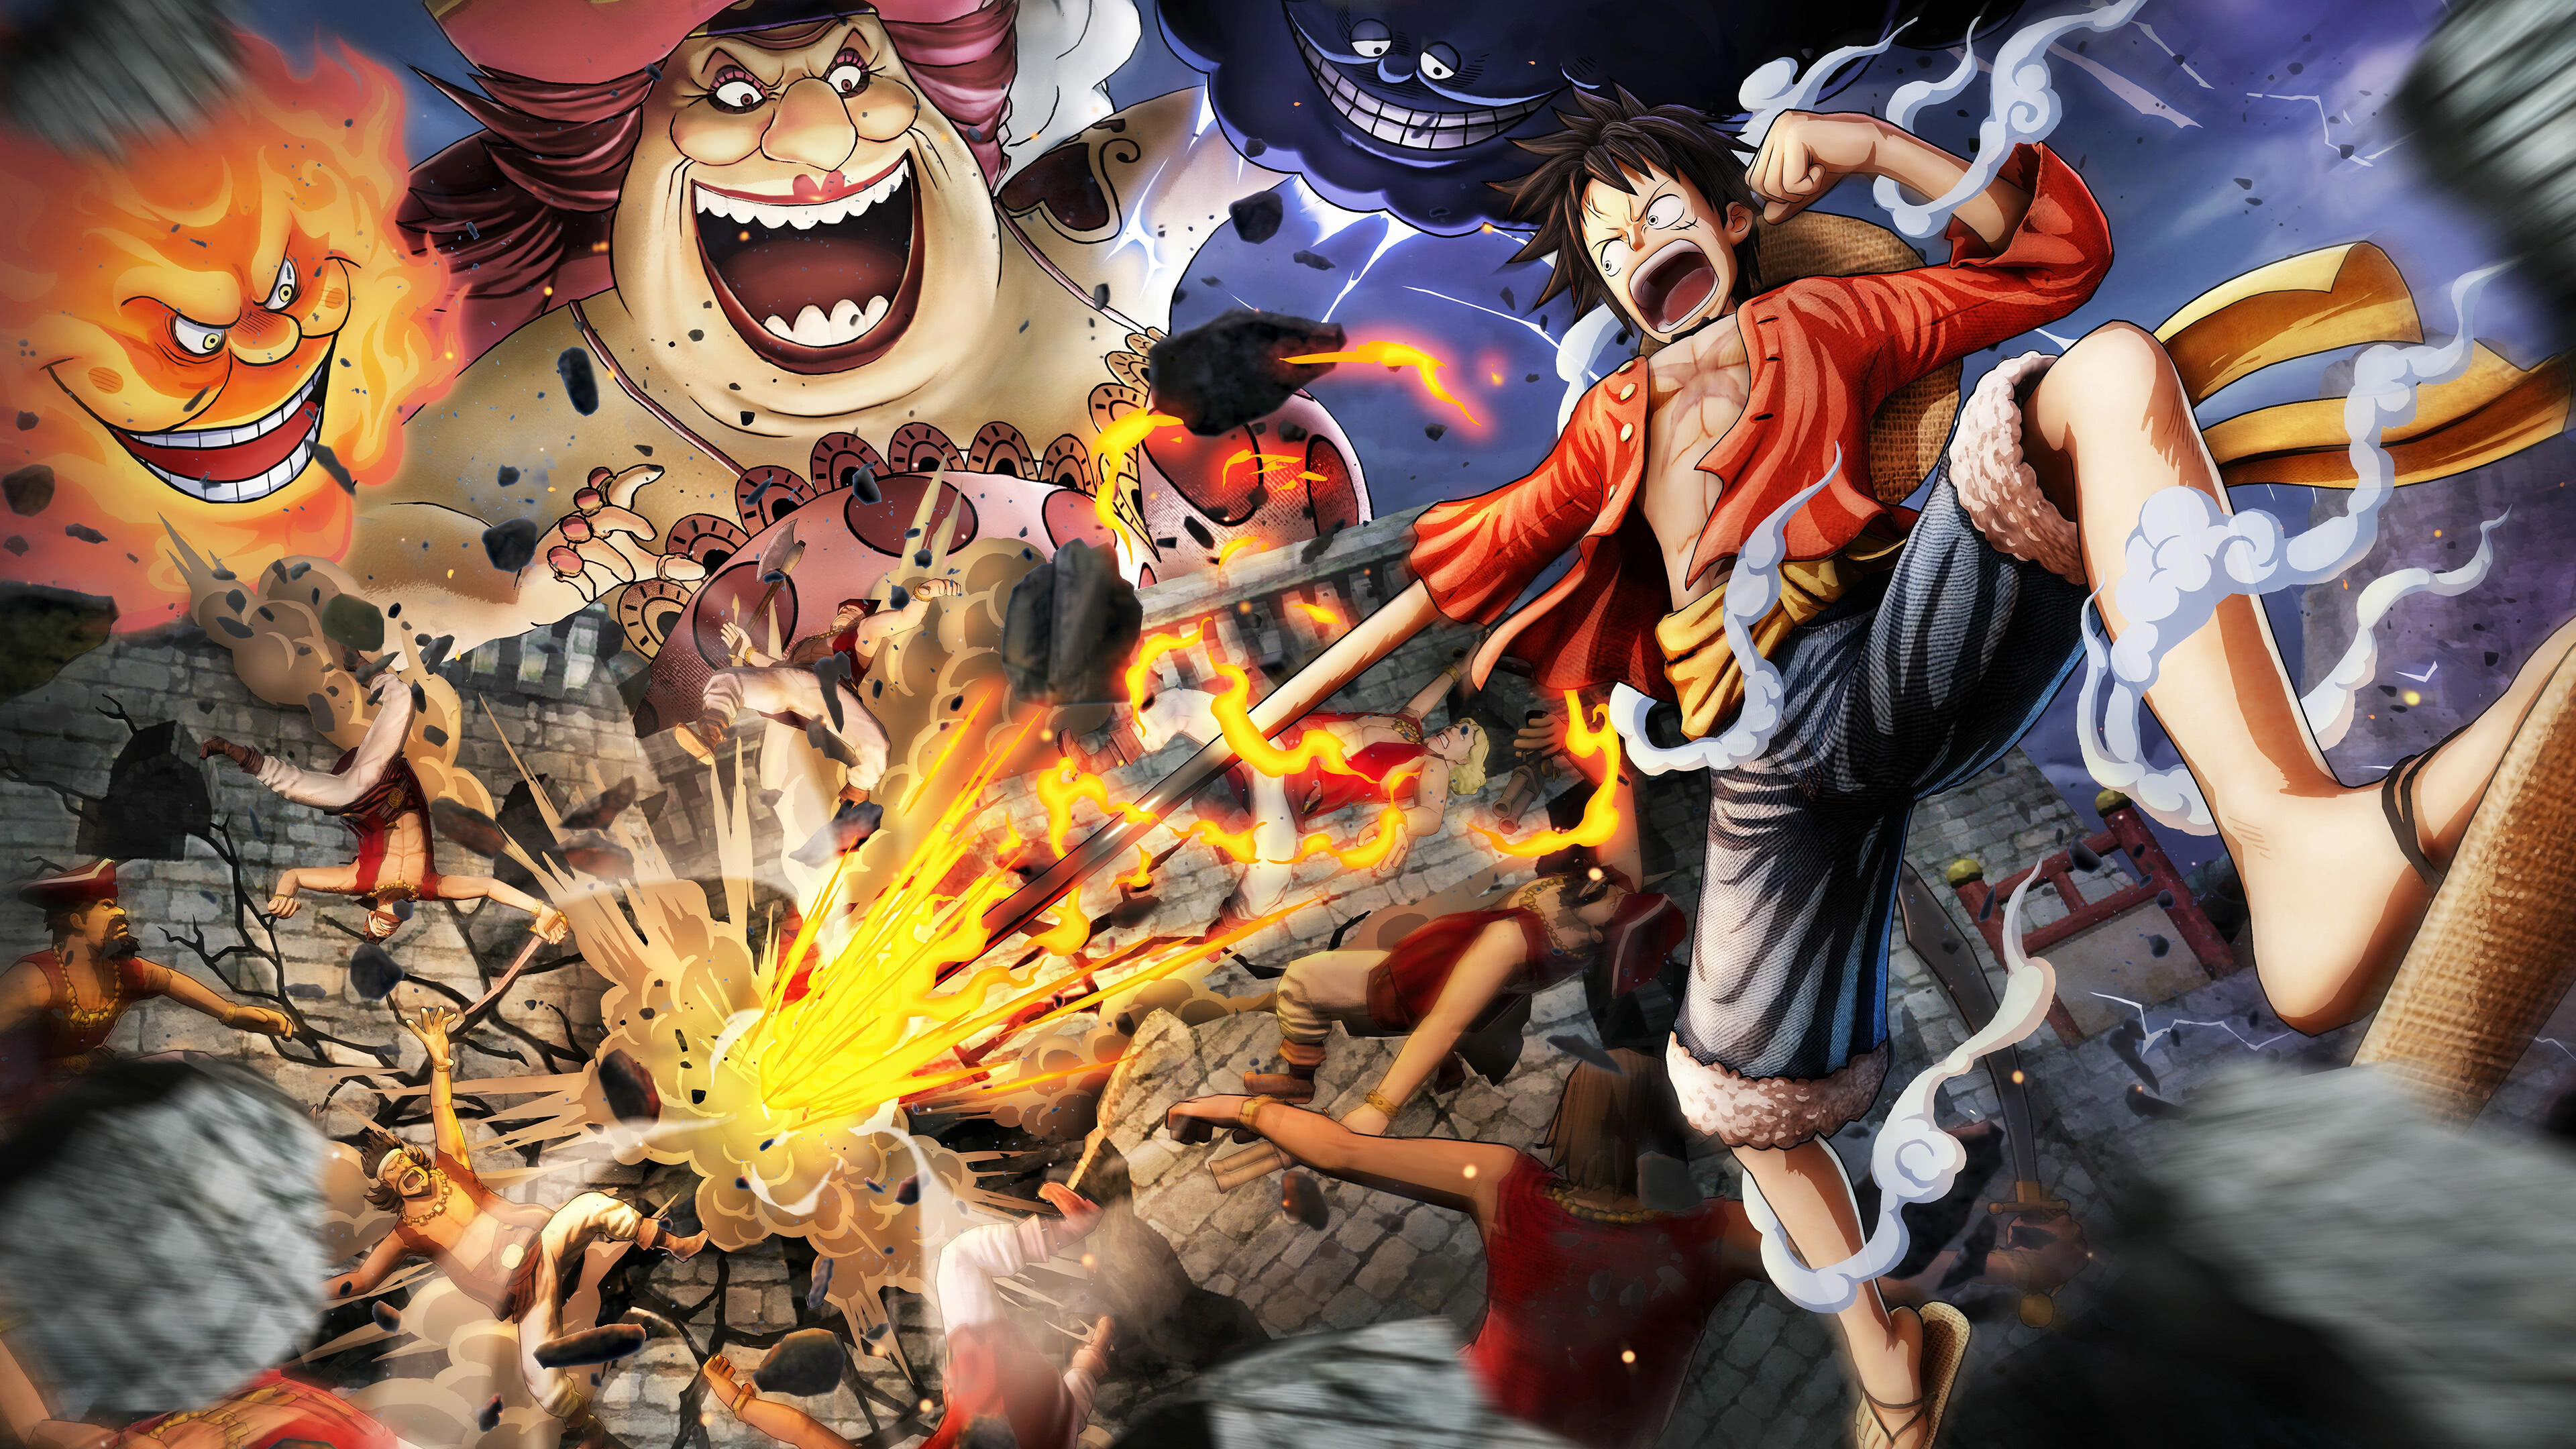 One Piece Pirate Warriors, UHD wallpaper, Epic battles, Adventure awaits, 3840x2160 4K Desktop